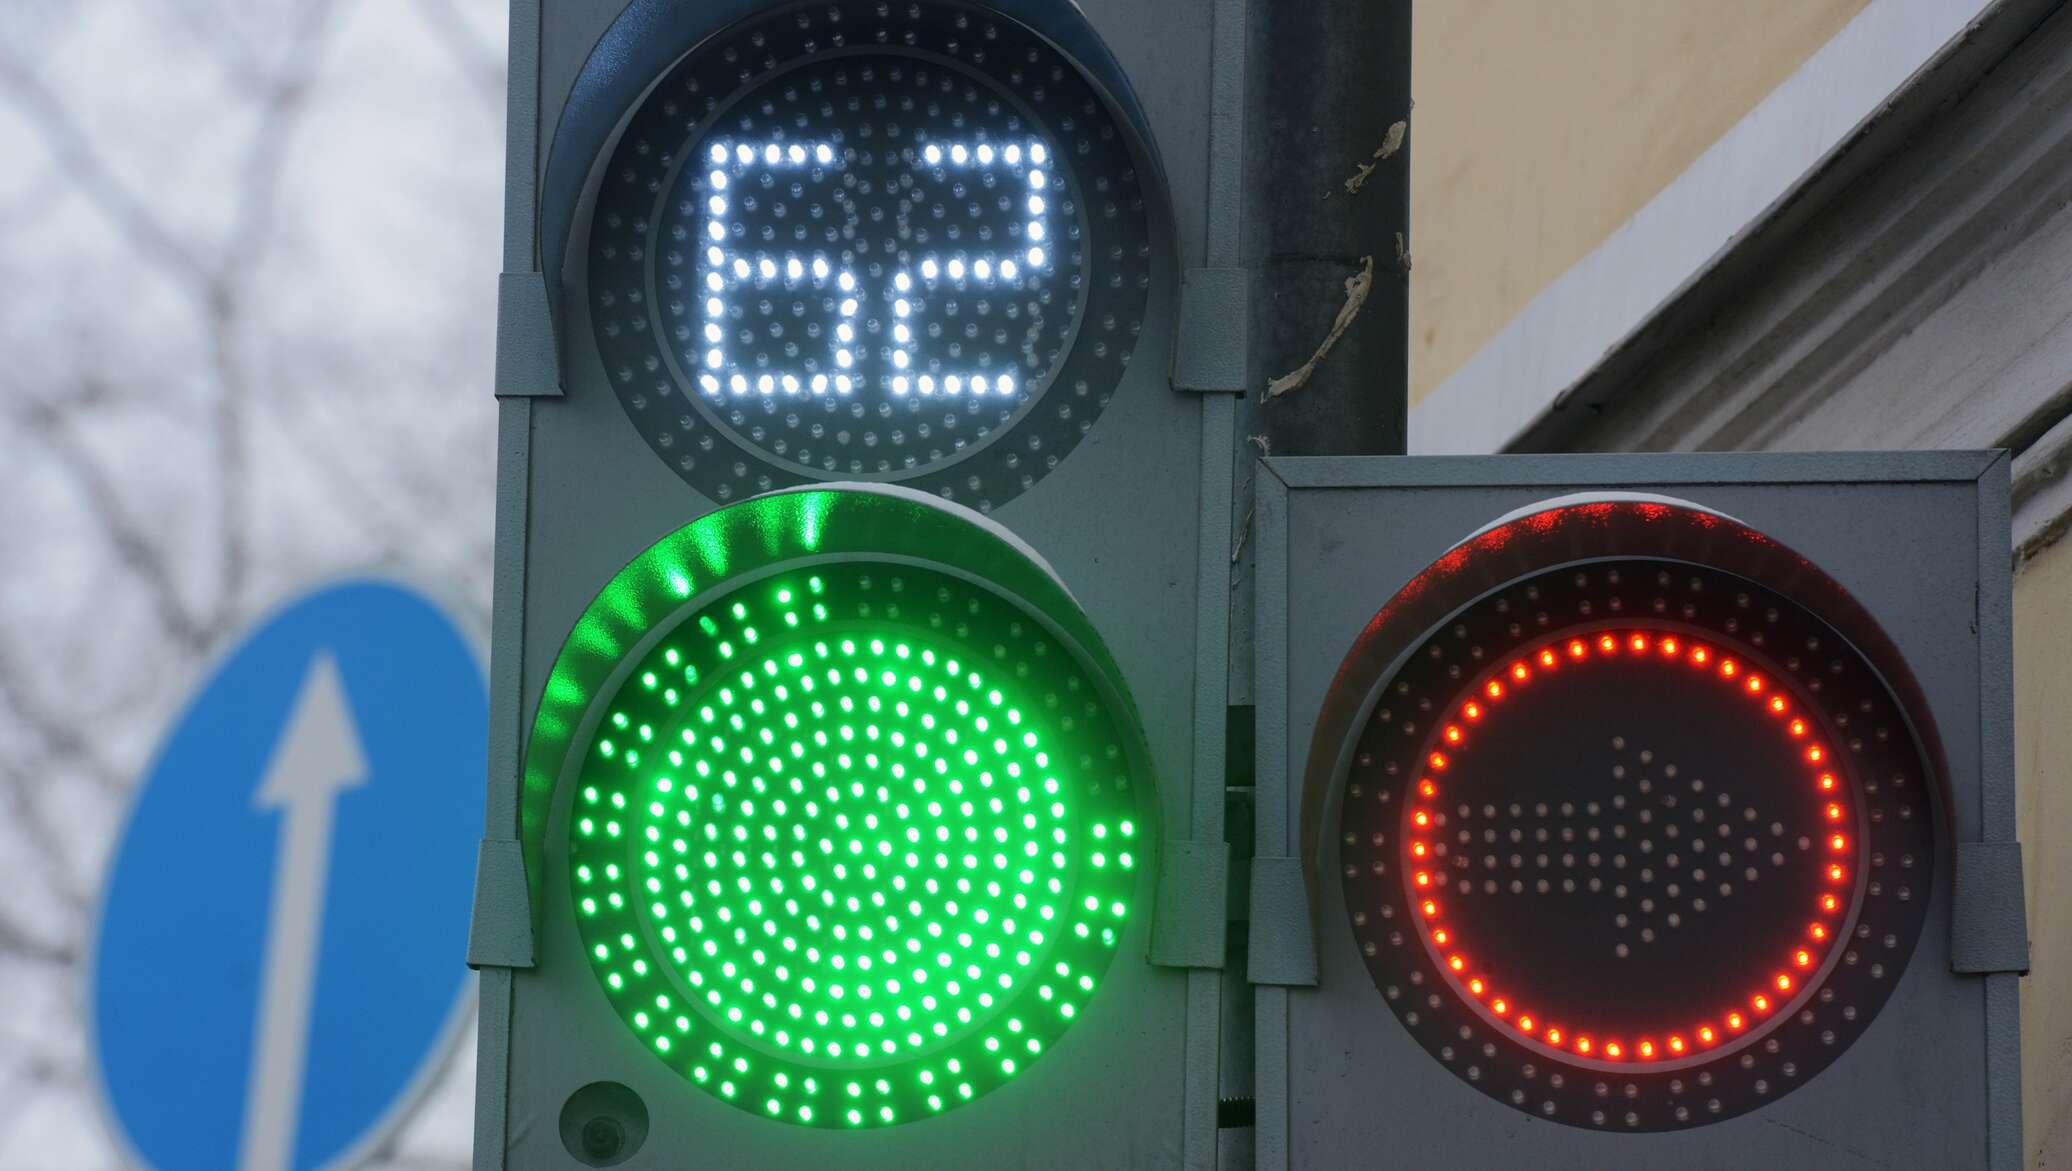 Сигнал для пешеходов. Светофор светодиодный транспортный т.1.2 с ТООВ (300 мм). Светофор светодиодный двухсекционный красный зеленый. Светофор с цифрами. Зеленый сигнал светофора.